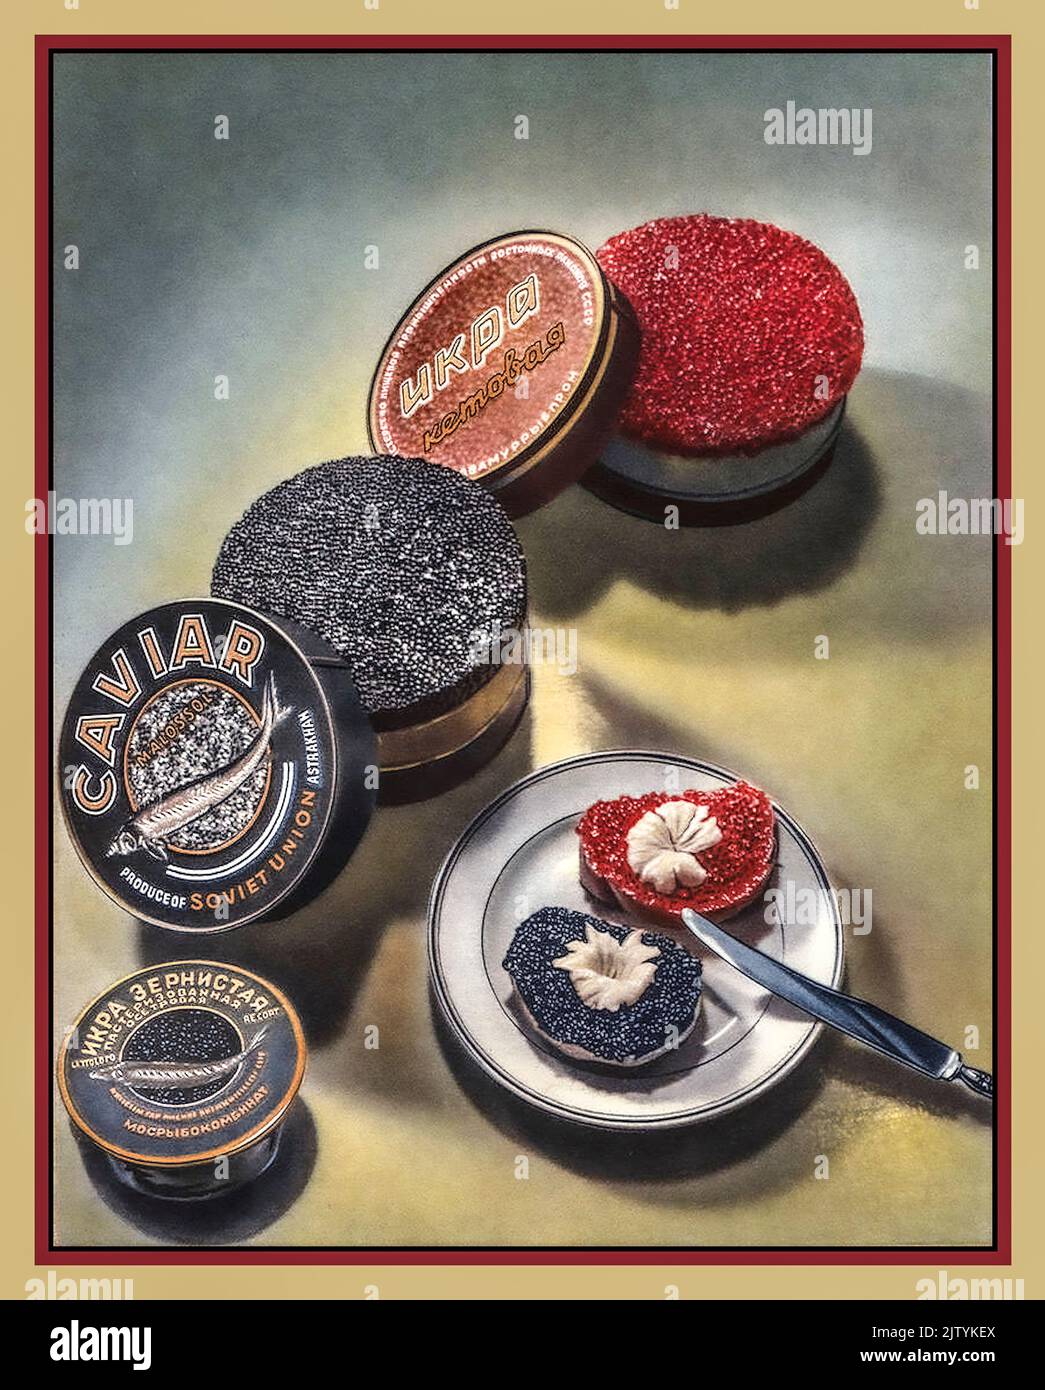 CAVIAR Vintage 1950s Union soviétique URSS Publicité Poster Caviar luxe rouge et noir variétés dans les boîtes russe spécialité poisson denrées alimentaires. Rare recherché et très cher Banque D'Images